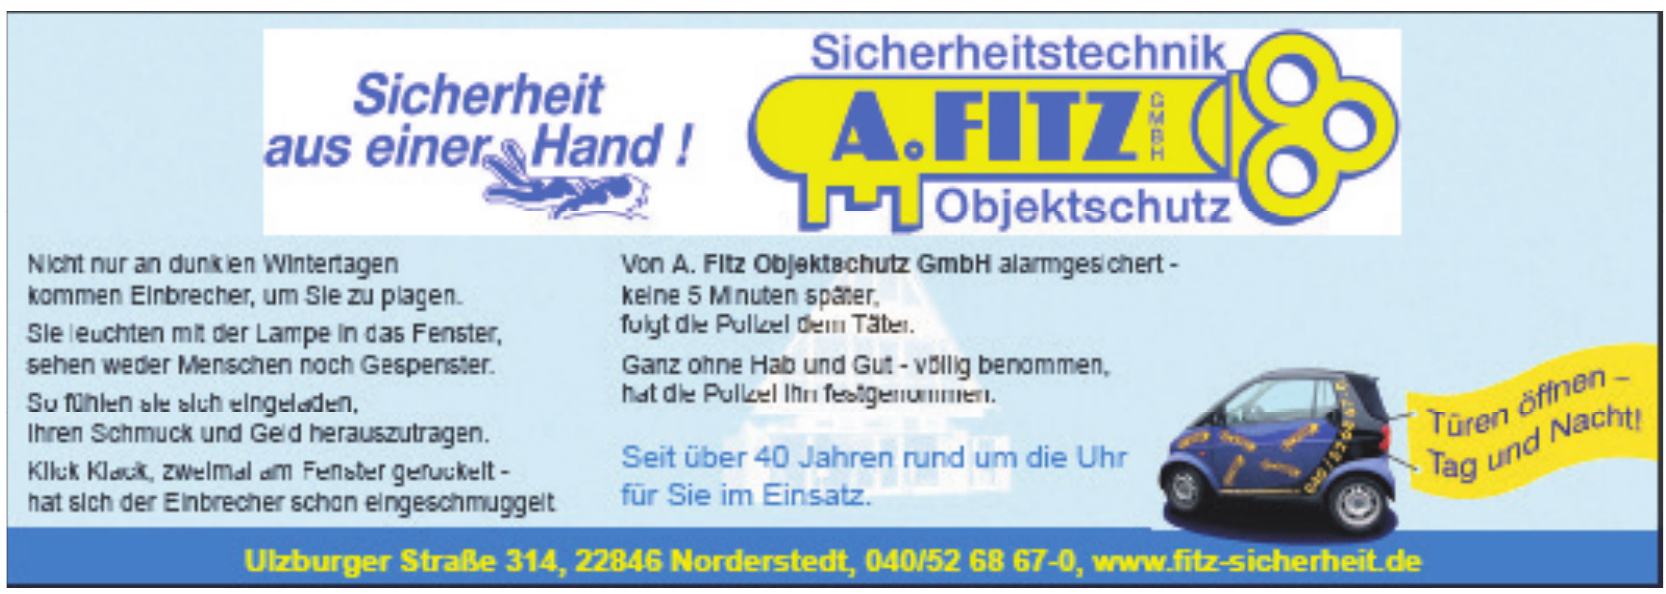 Sicherheitstechnik Objektschutz A. Fitz GmbH